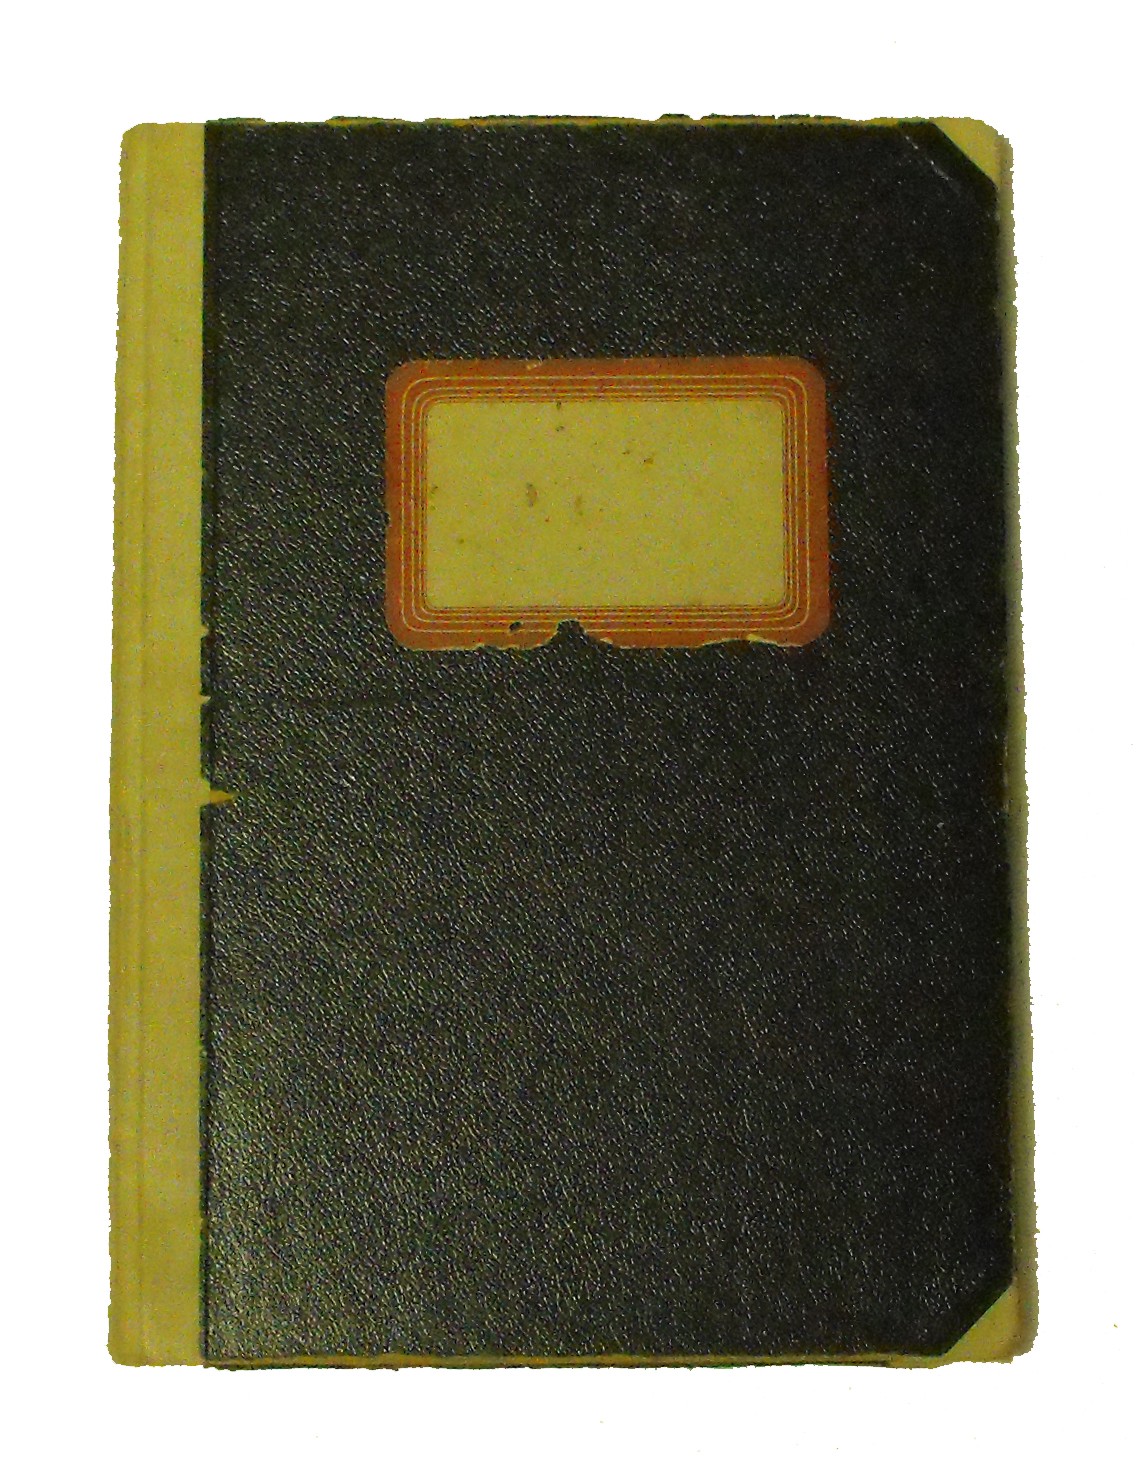 Mitgliederverzeichnis und Beitragsbuch des SC Bad Bodendorf 1919 e. V. von 1956 bis 1975 (Heimatmuseum und -Archiv Bad Bodendorf CC BY-NC-SA)